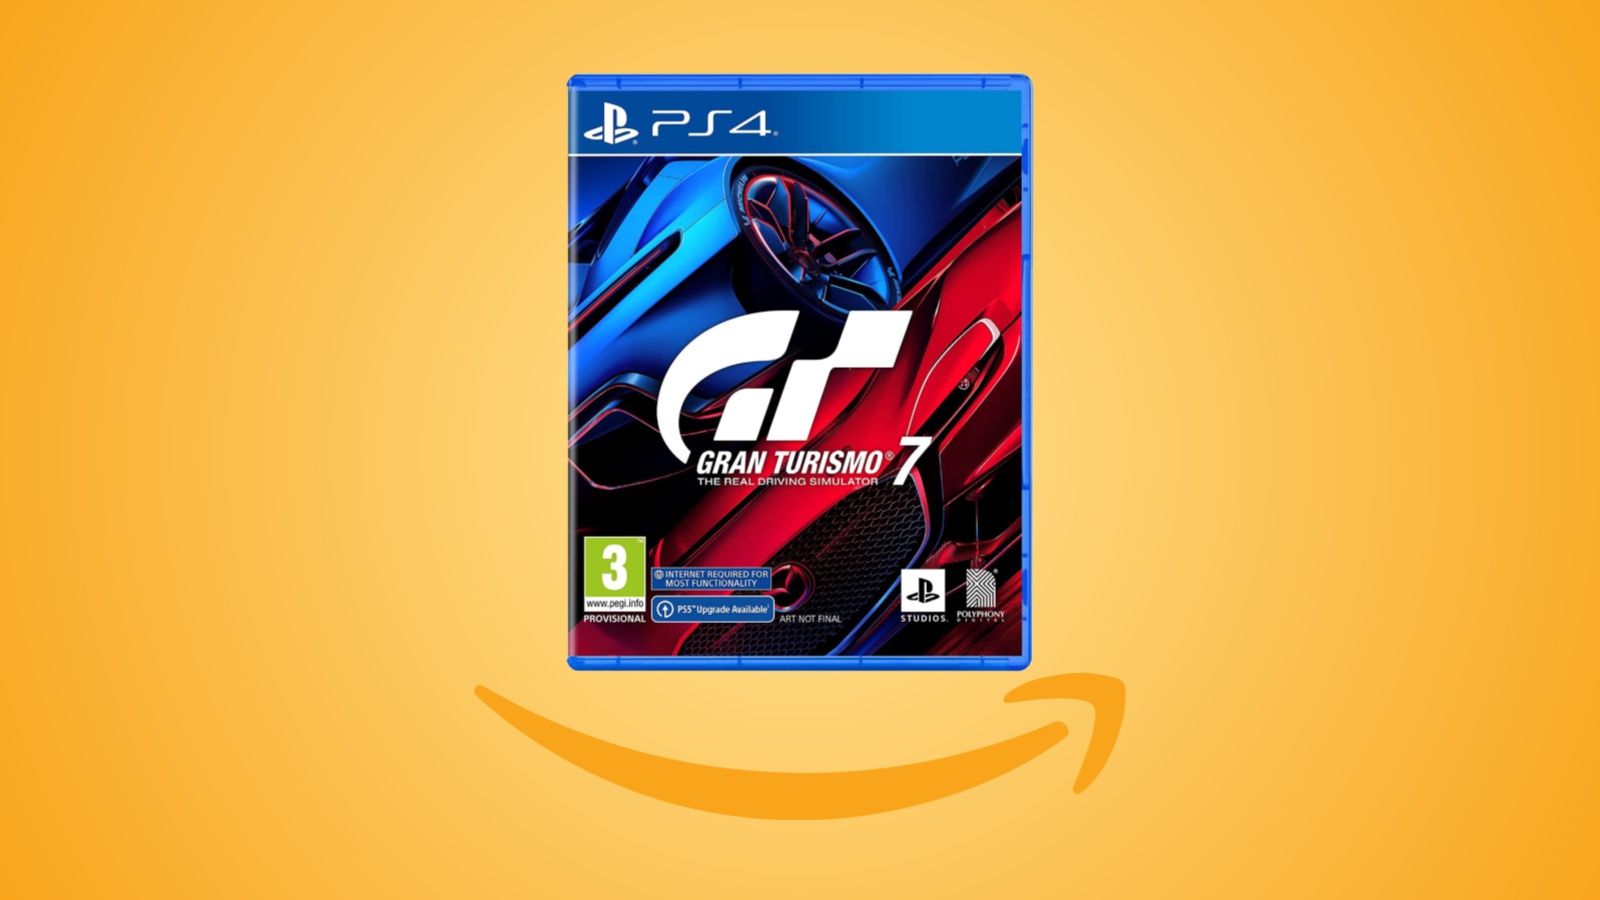 Offerte Amazon: Gran Turismo 7 per PS4 è ora in forte sconto, vediamo il prezzo